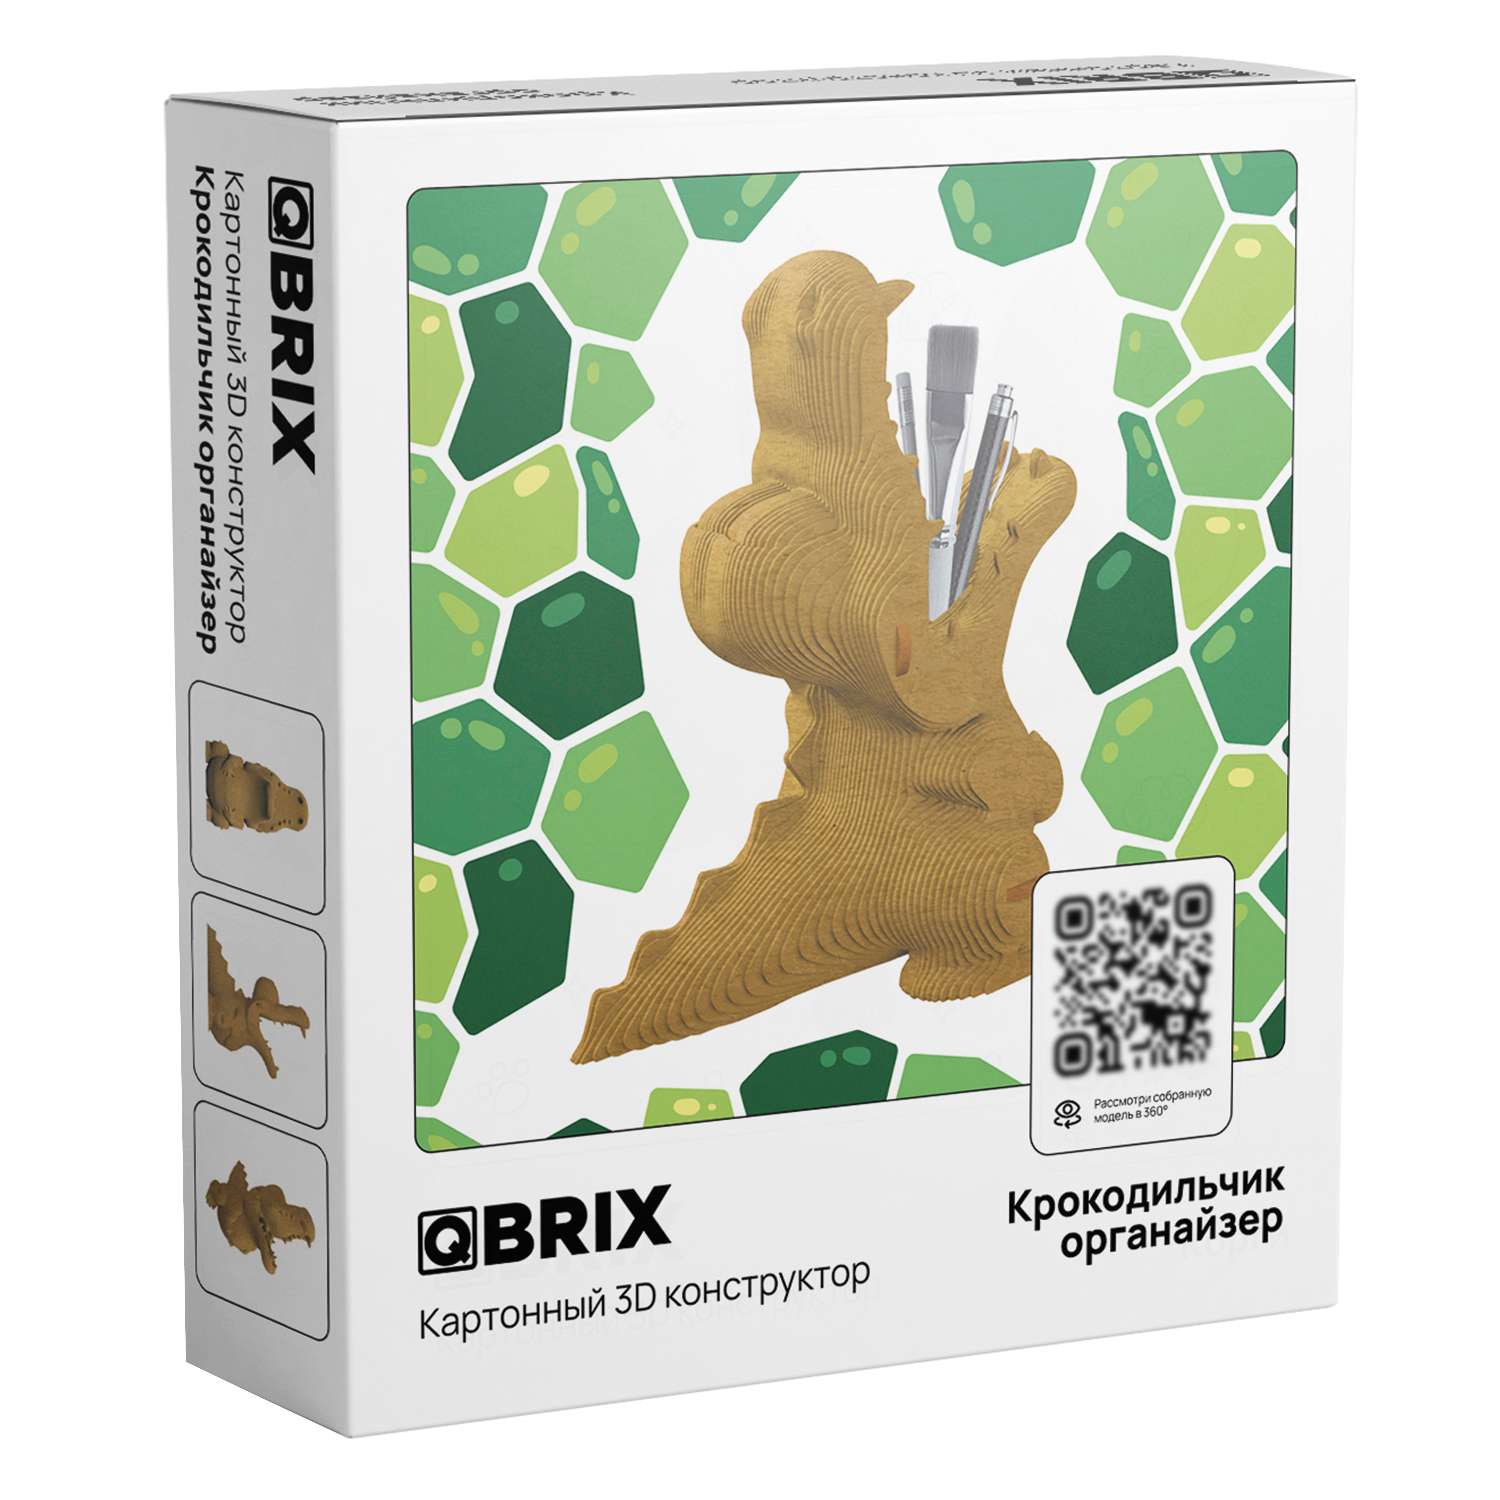 Конструктор QBRIX 3D картонный Крокодильчик органайзер 20037 20037 - фото 1